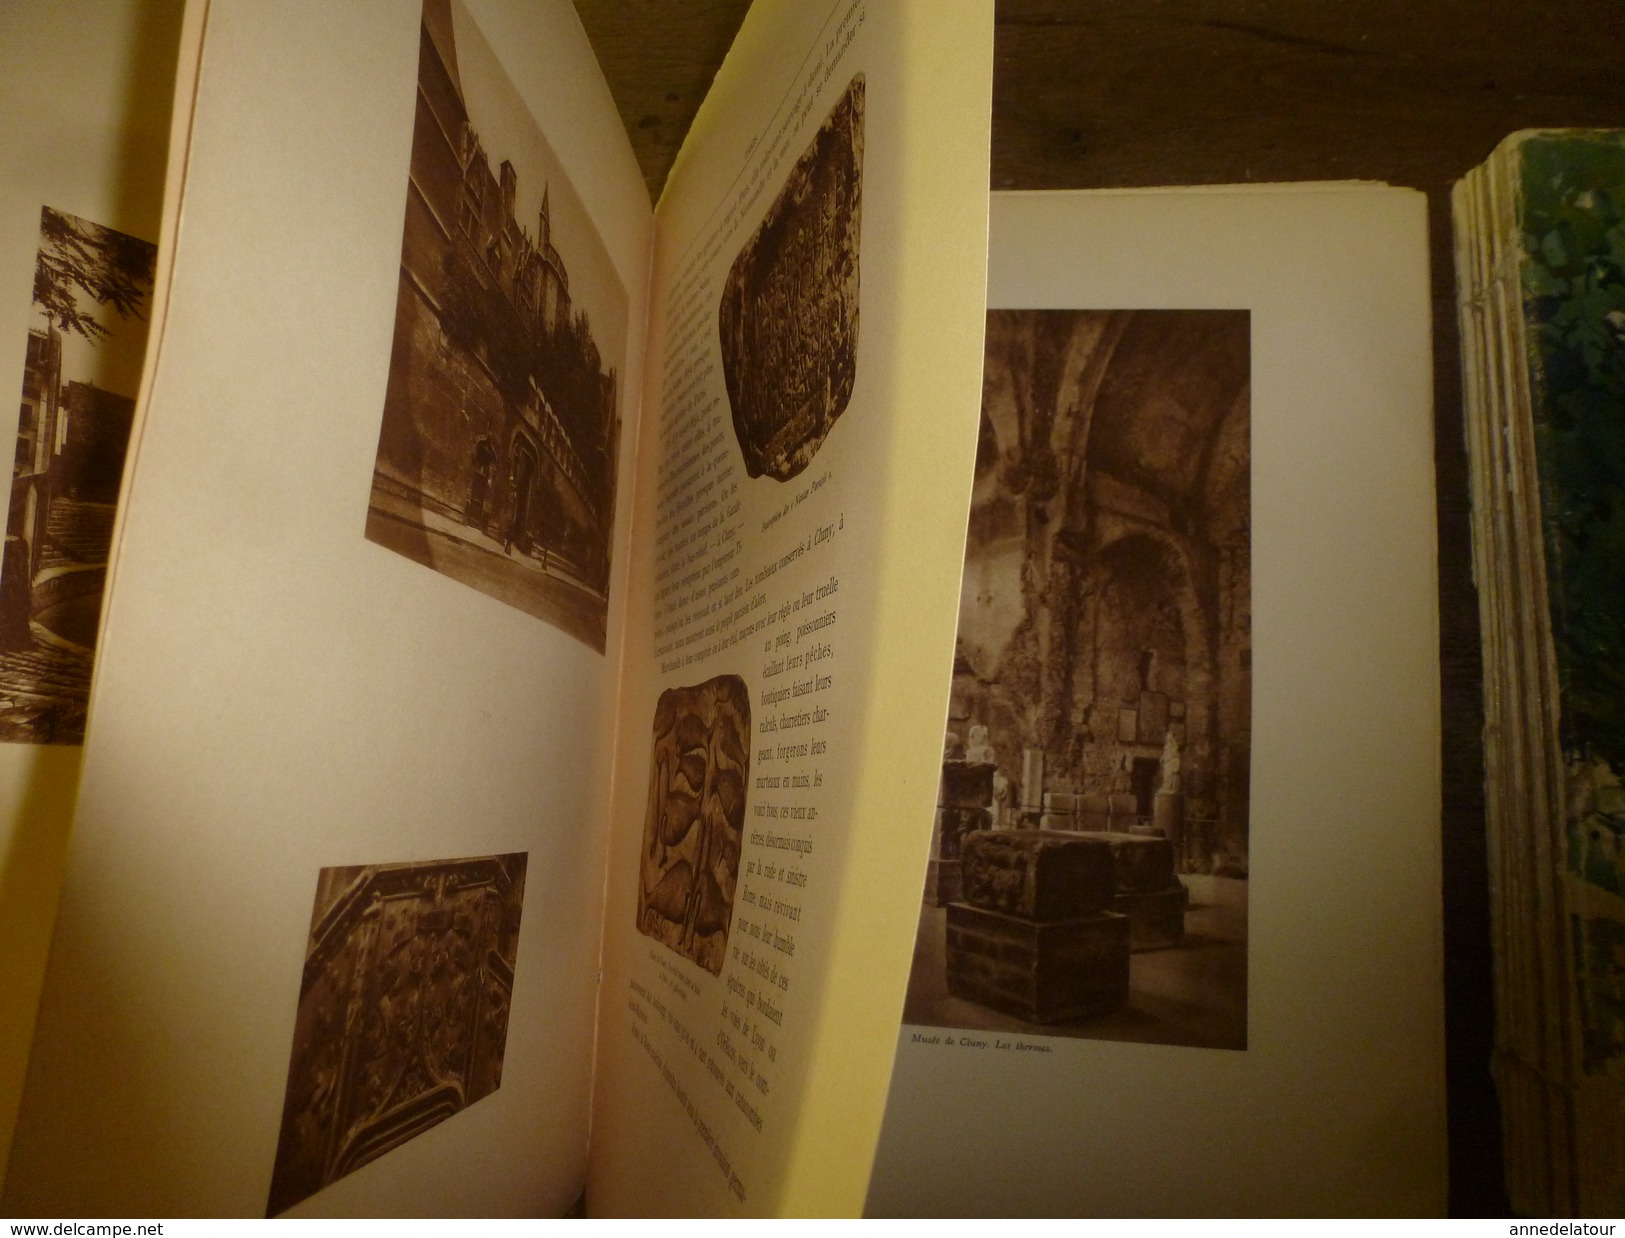 1928 PARIS en 3 ouvrages d'une édition numérotée (important documentaire de textes, photos et gravures signées)